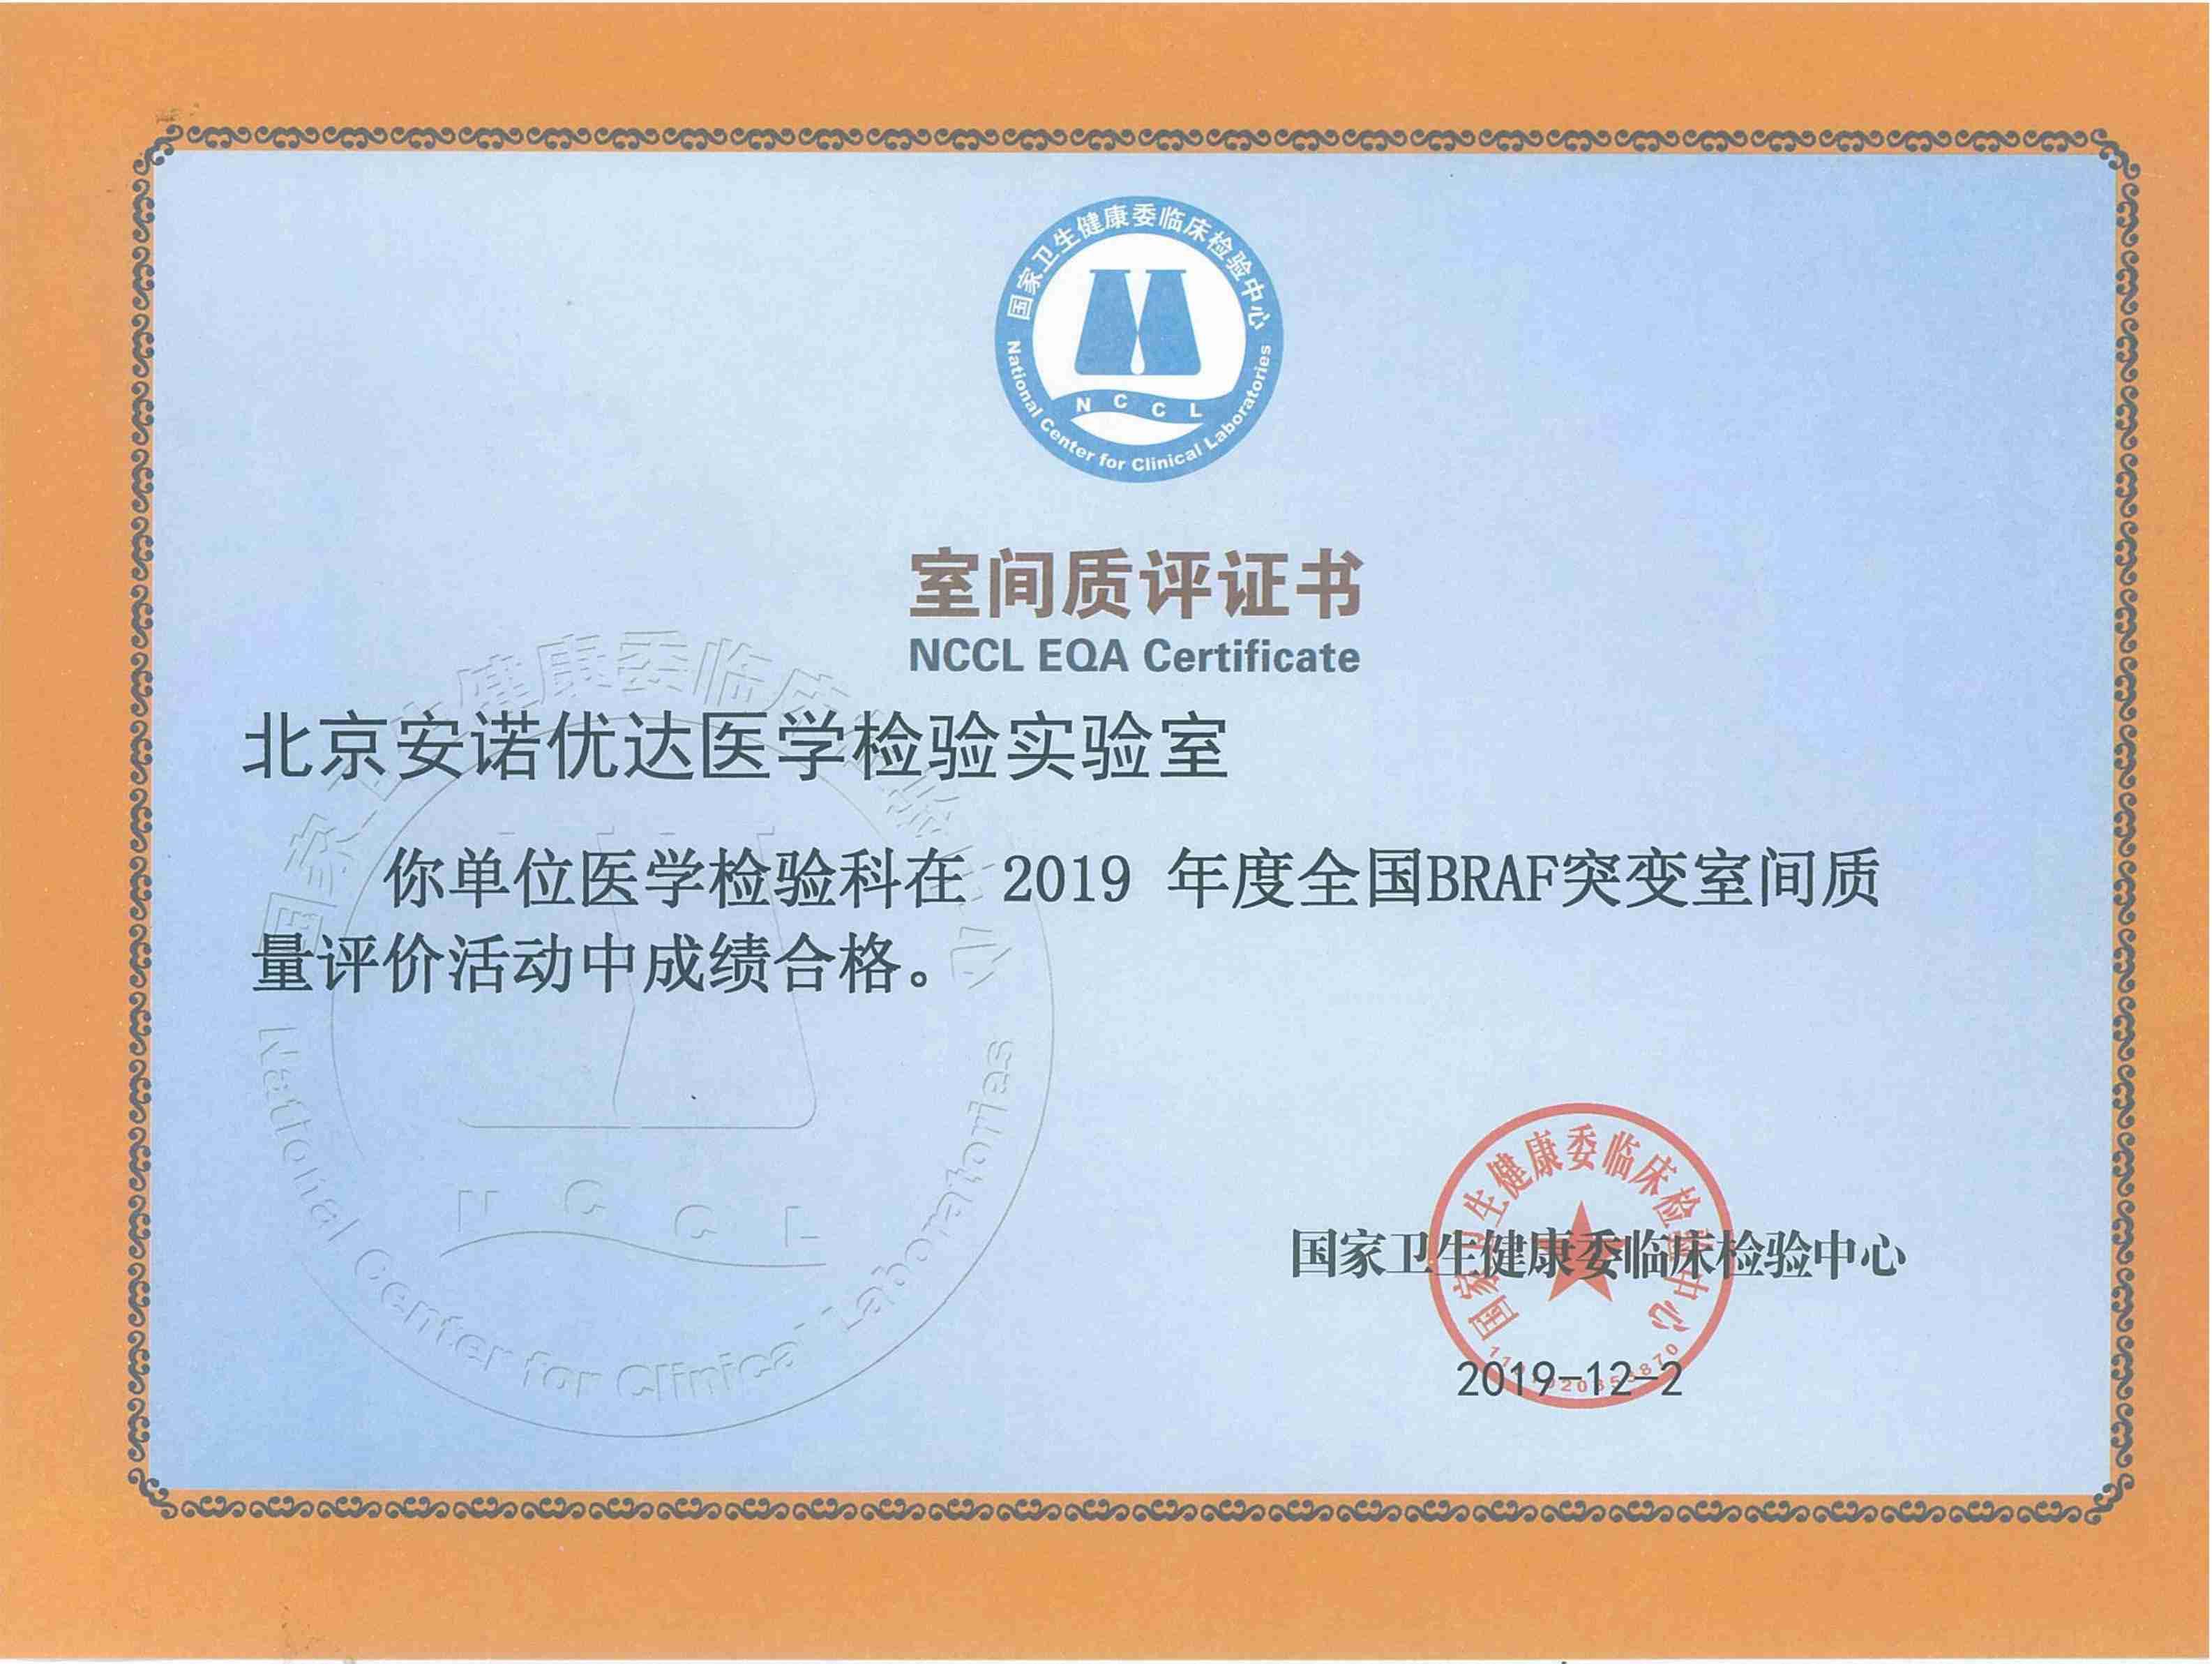 NCCL EQA Certificate of BRAF Mutation (2019)